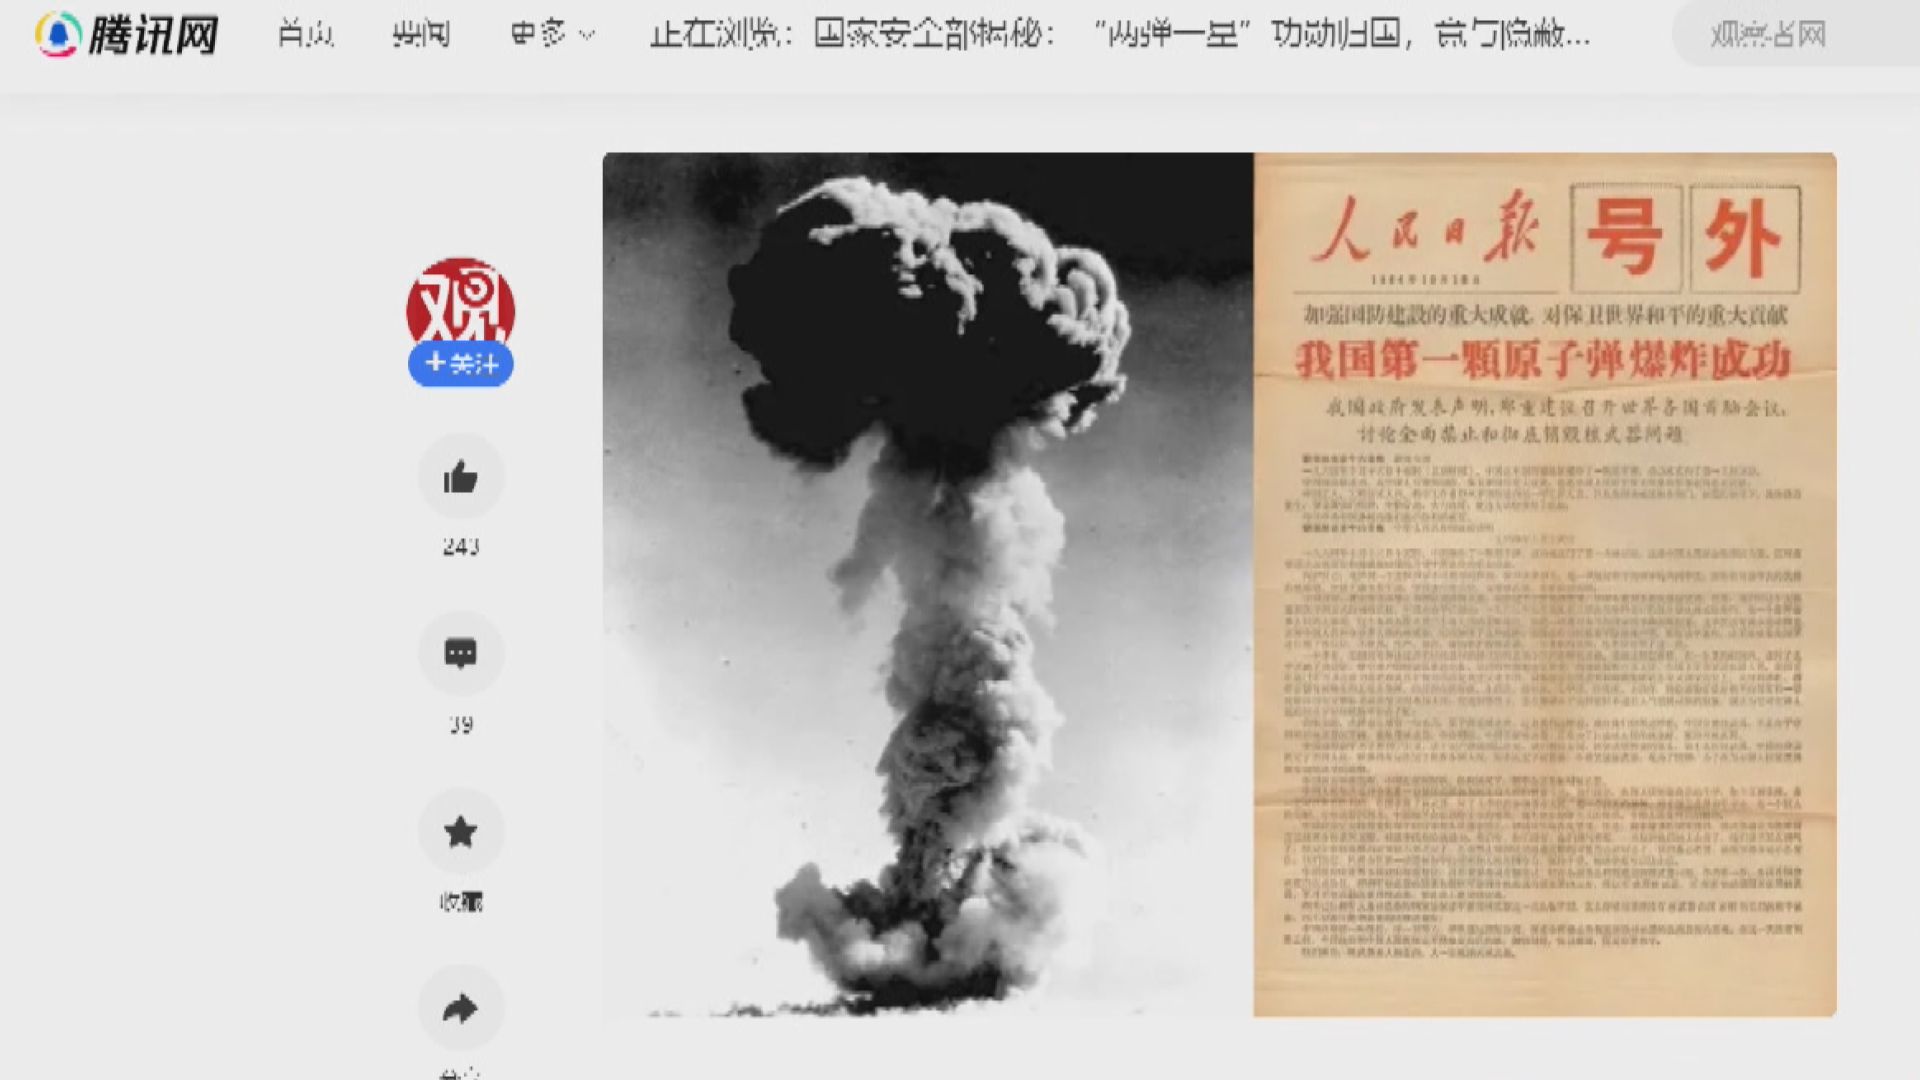 中國成功研製並引爆第一顆原子彈59周年